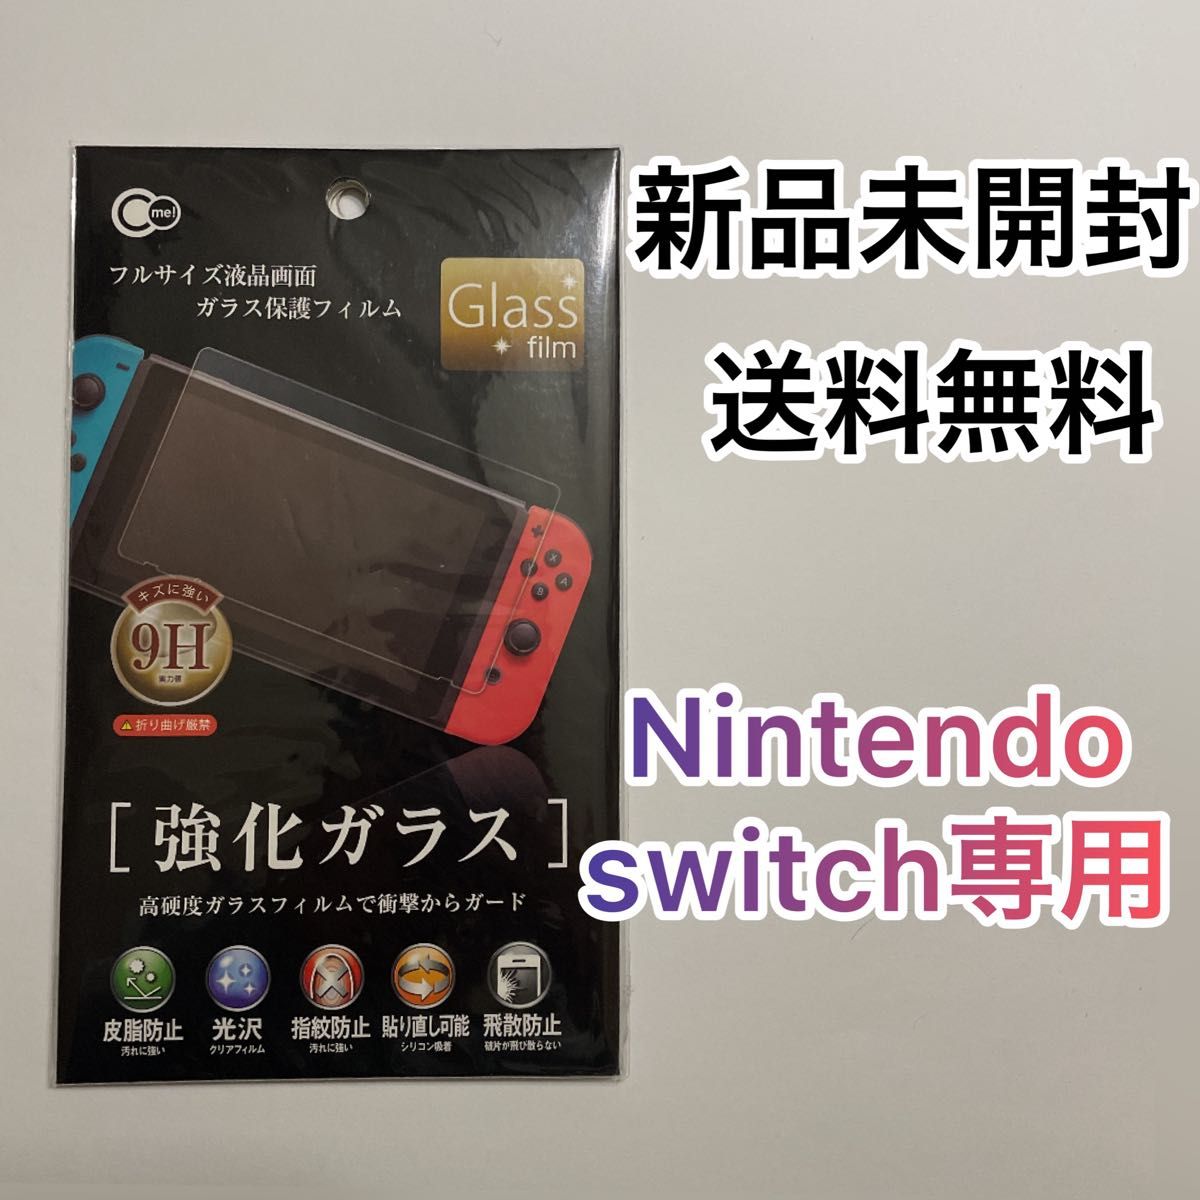 【任天堂】通常版 Switch 強化ガラス スイッチ 保護フィルム 傷防止 任天堂スイッチ  Nintendo Switch